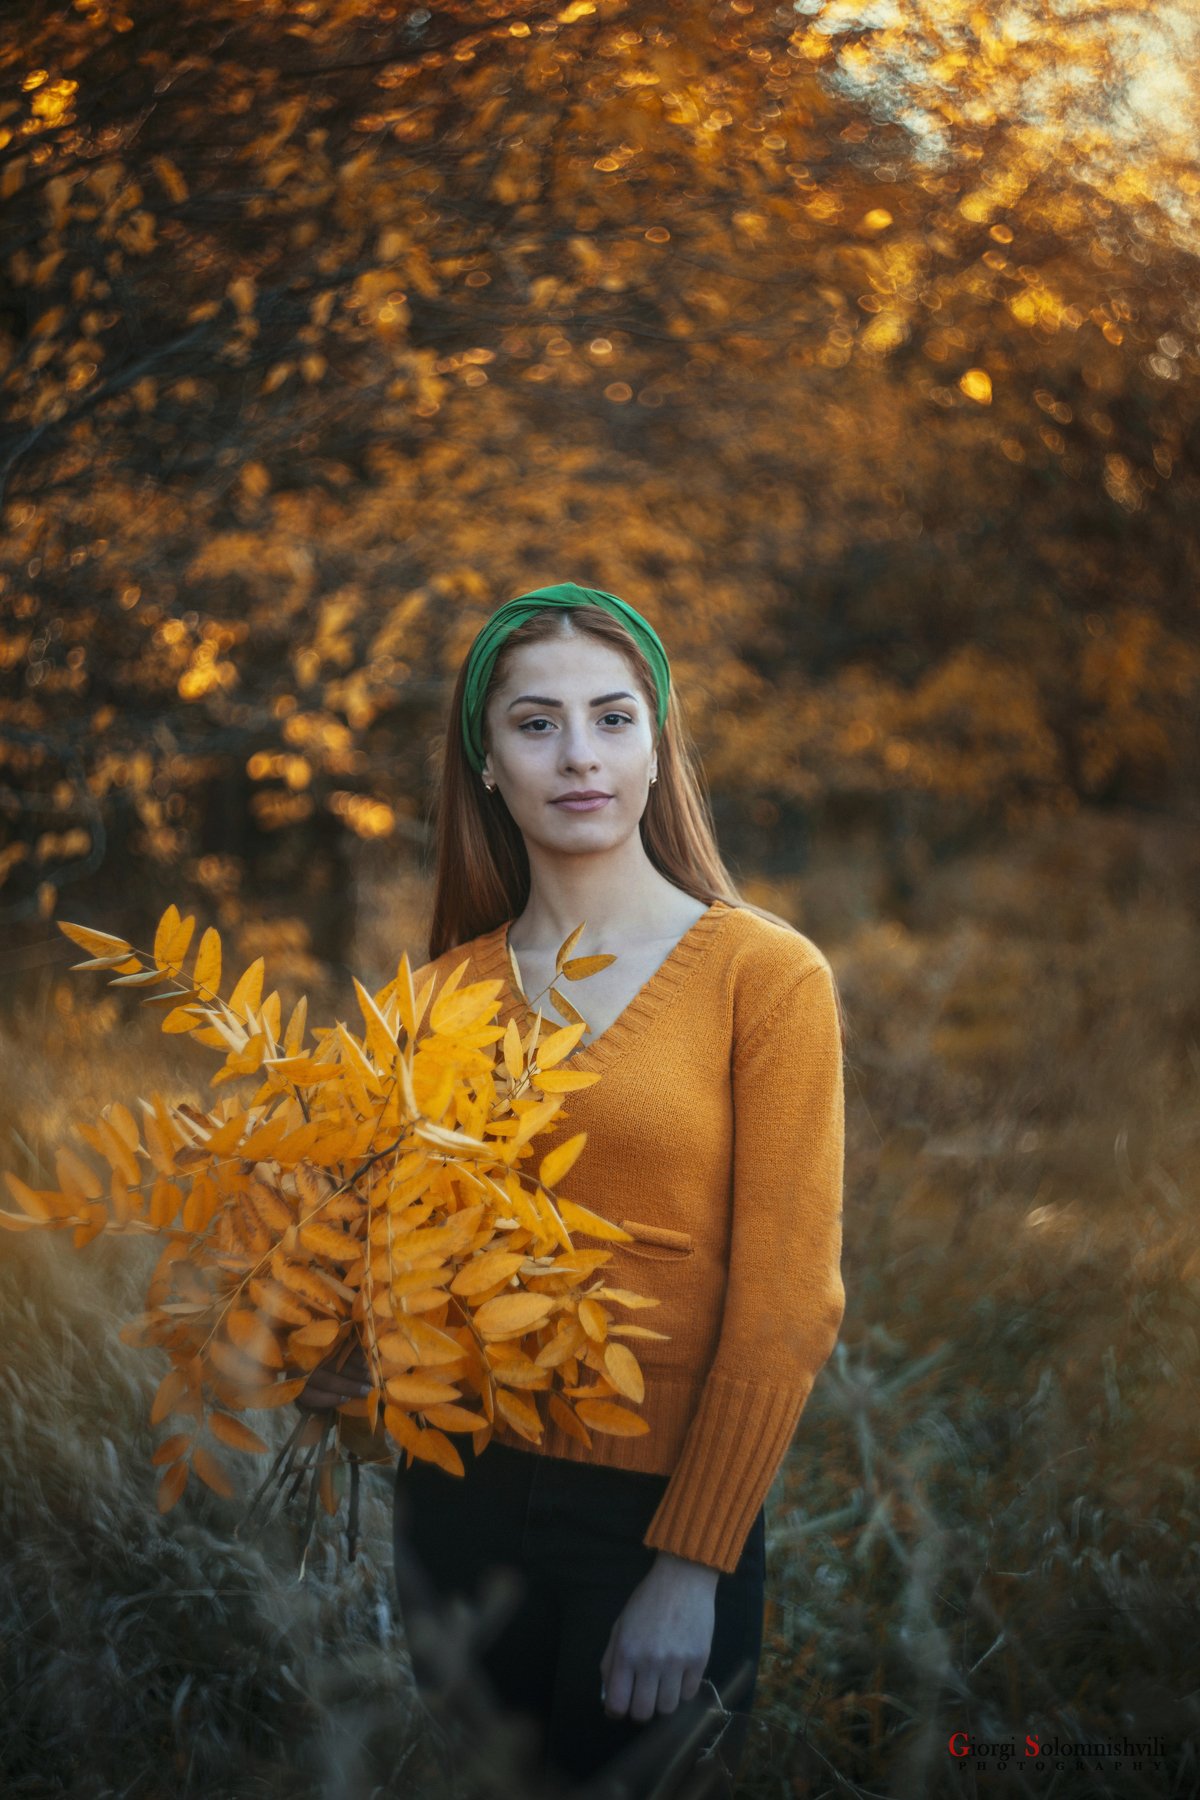 #Autumn #art #photo #girl , solomnishvili giorgi